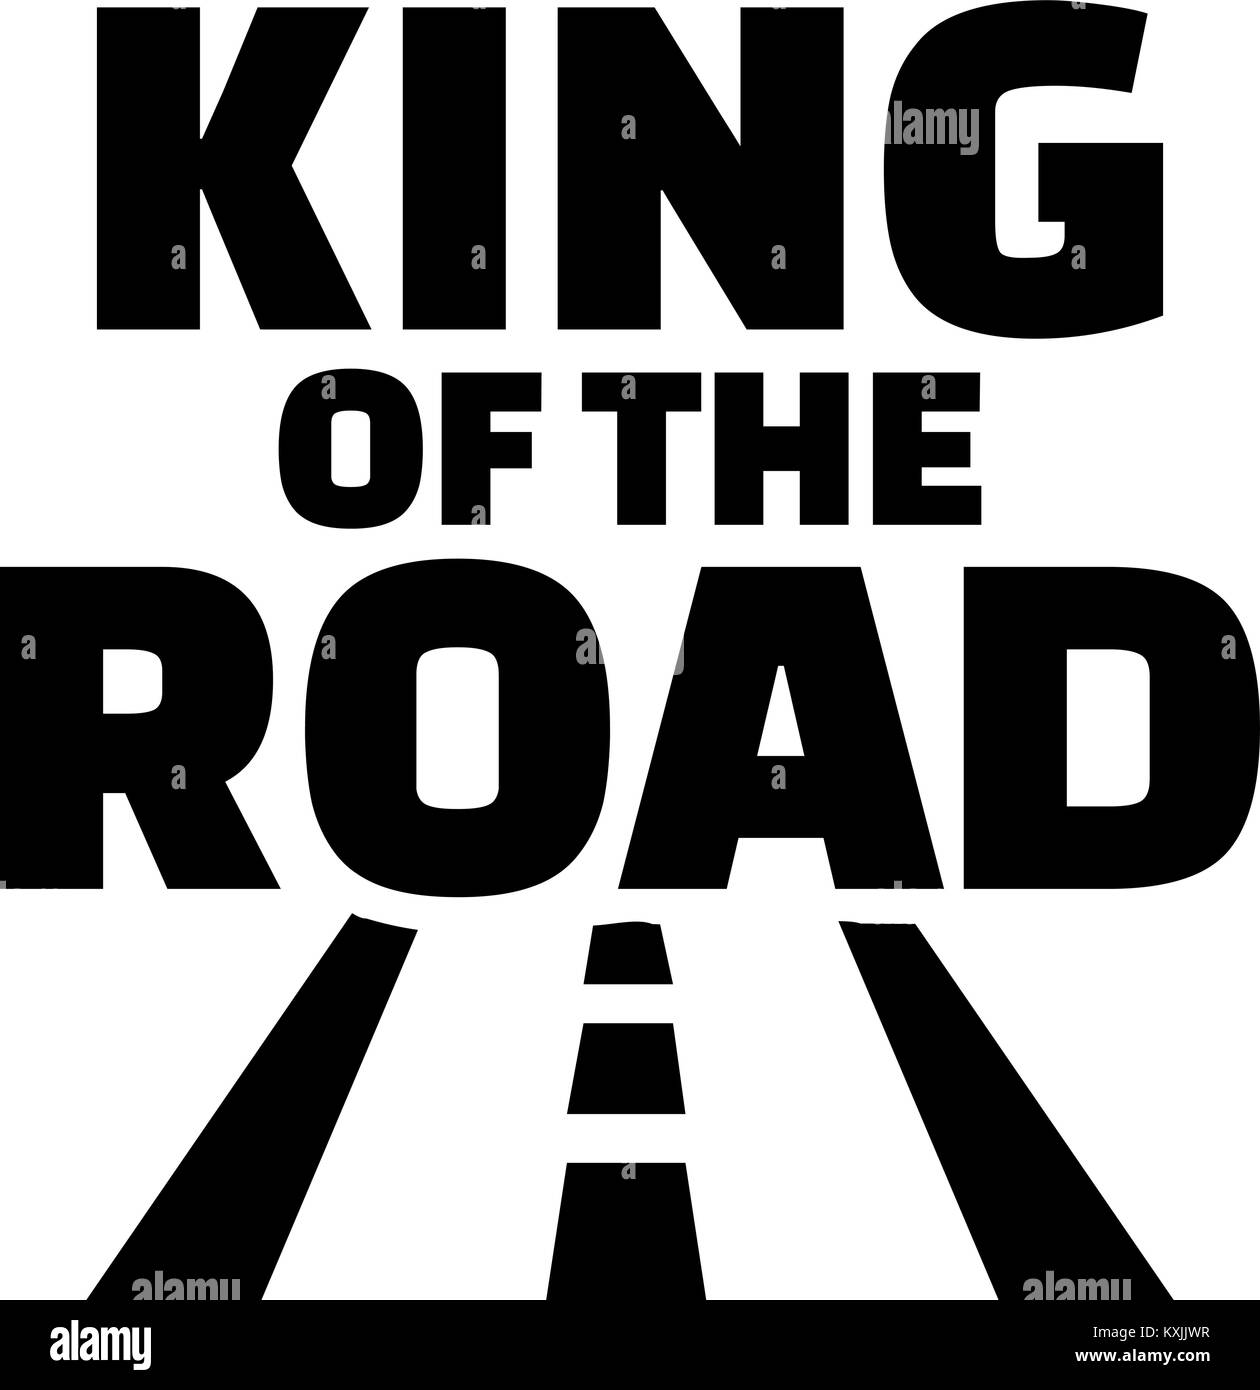 King of road стим фото 8